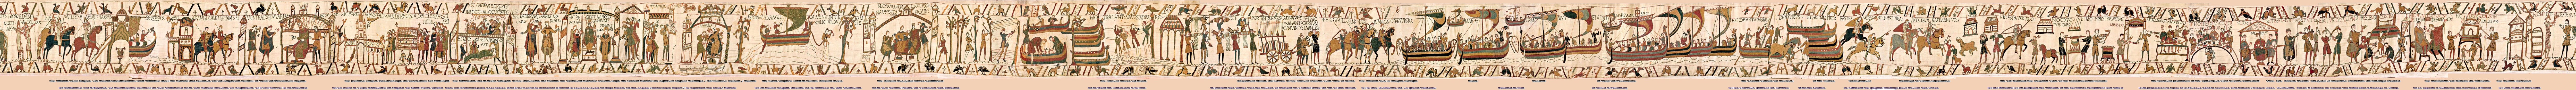 tapisserie de Bayeux 2